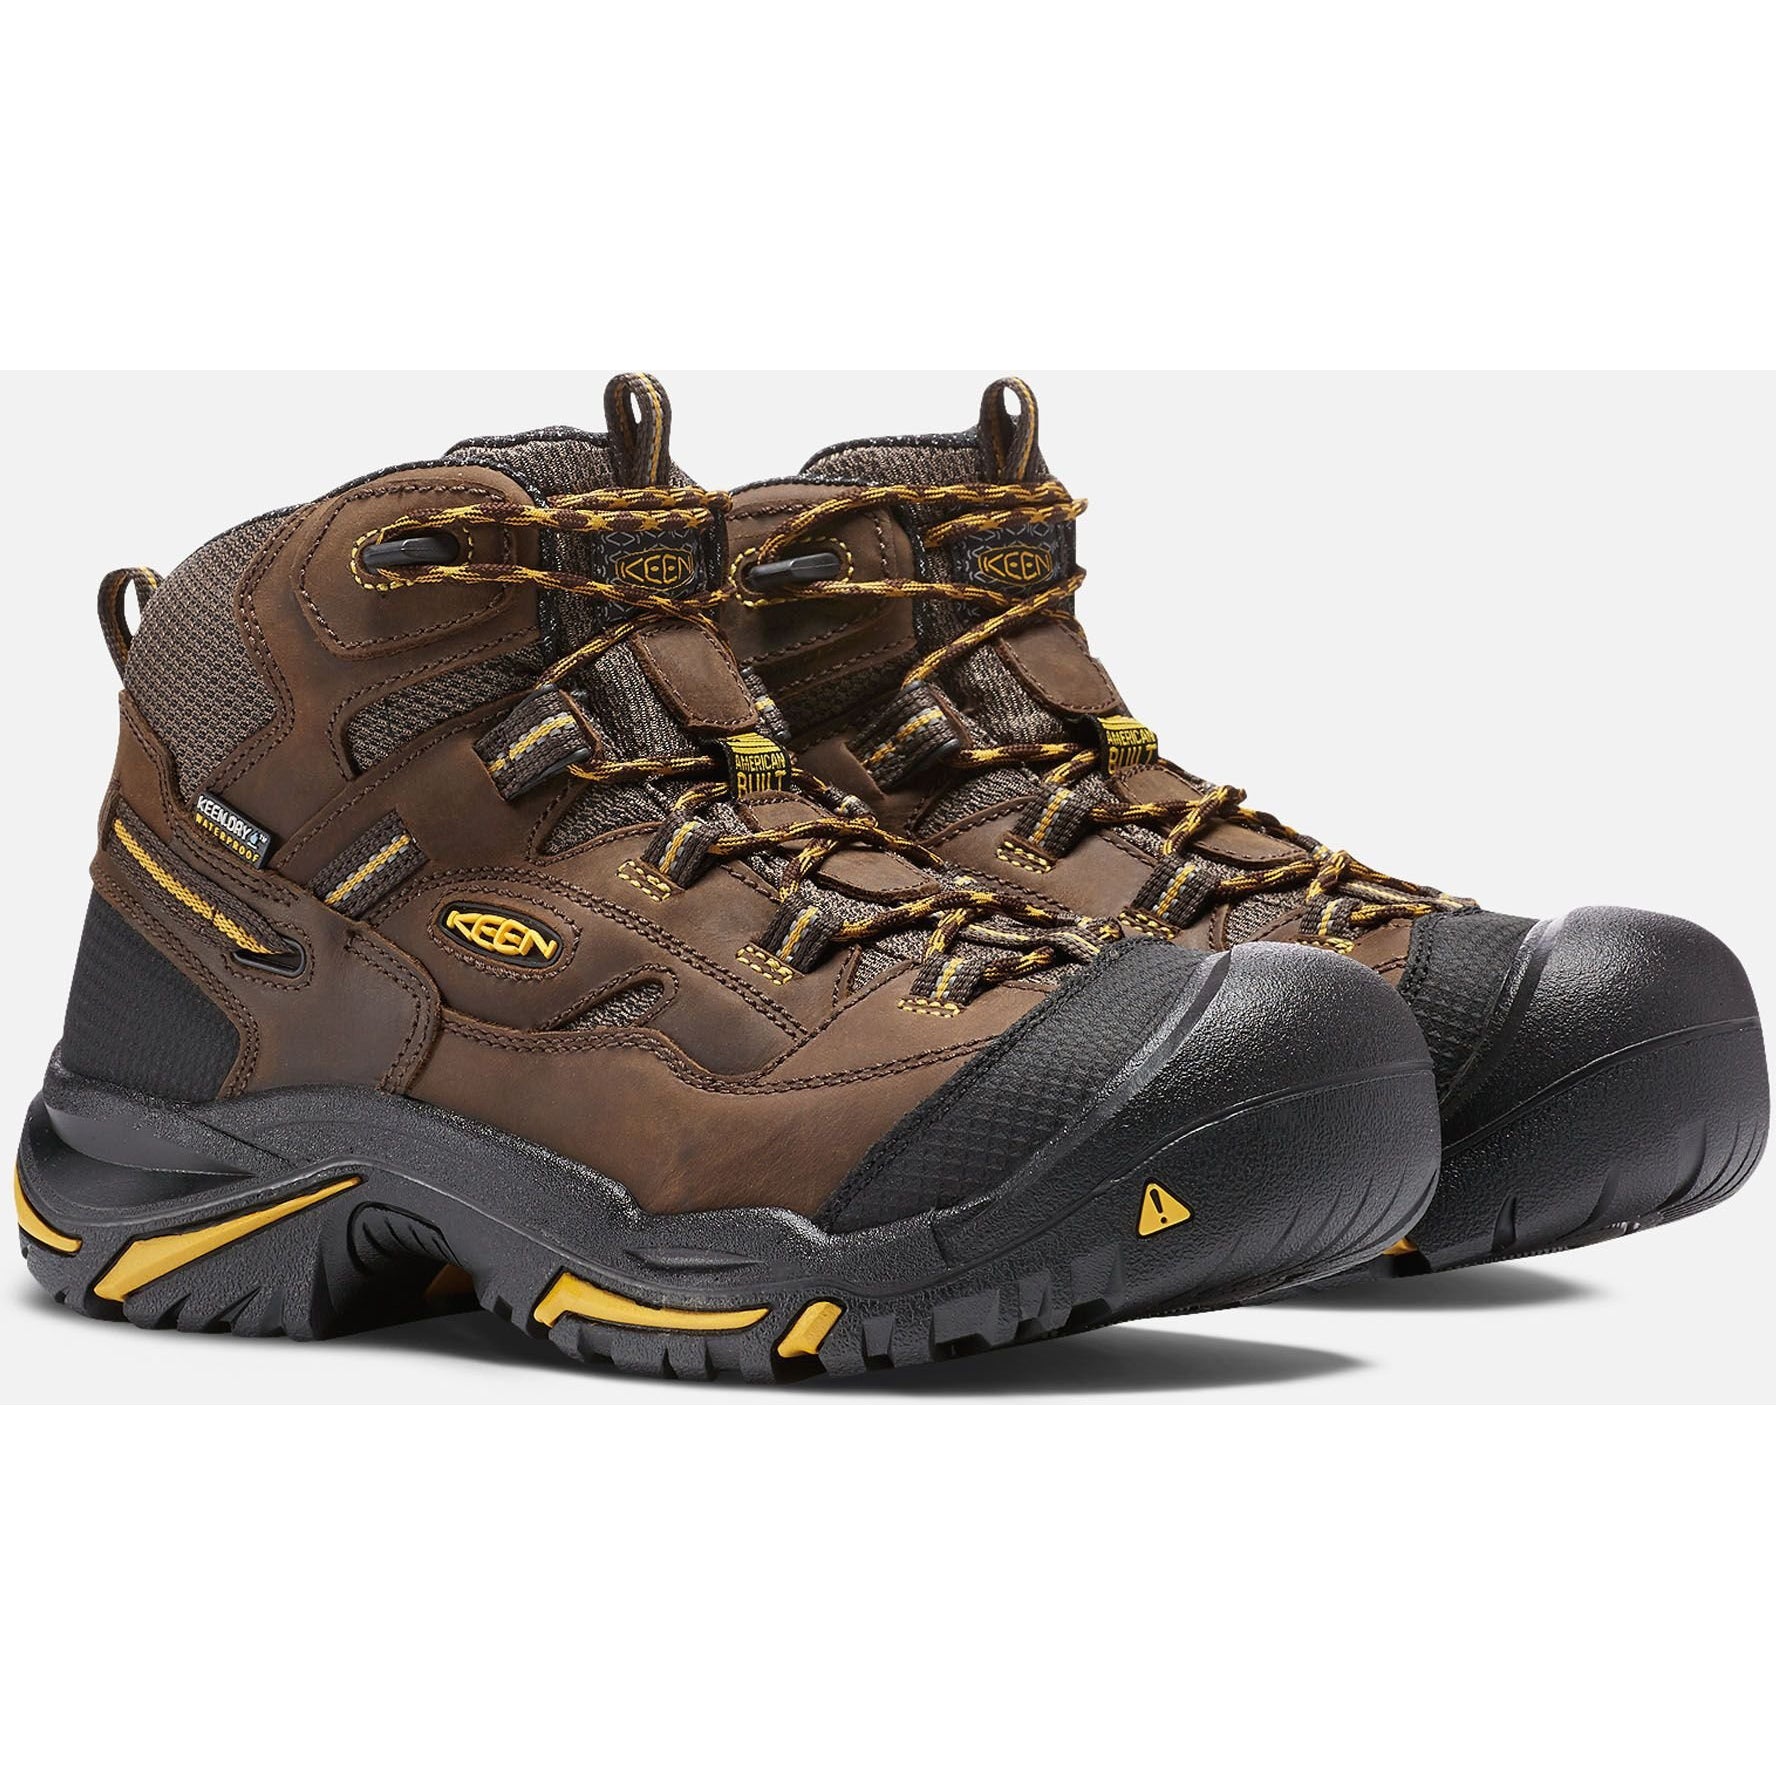 Keen Utility Men's Braddock Mid Soft Toe WP Work Boot - Brown- 1020162 7 / Medium / Brown - Overlook Boots